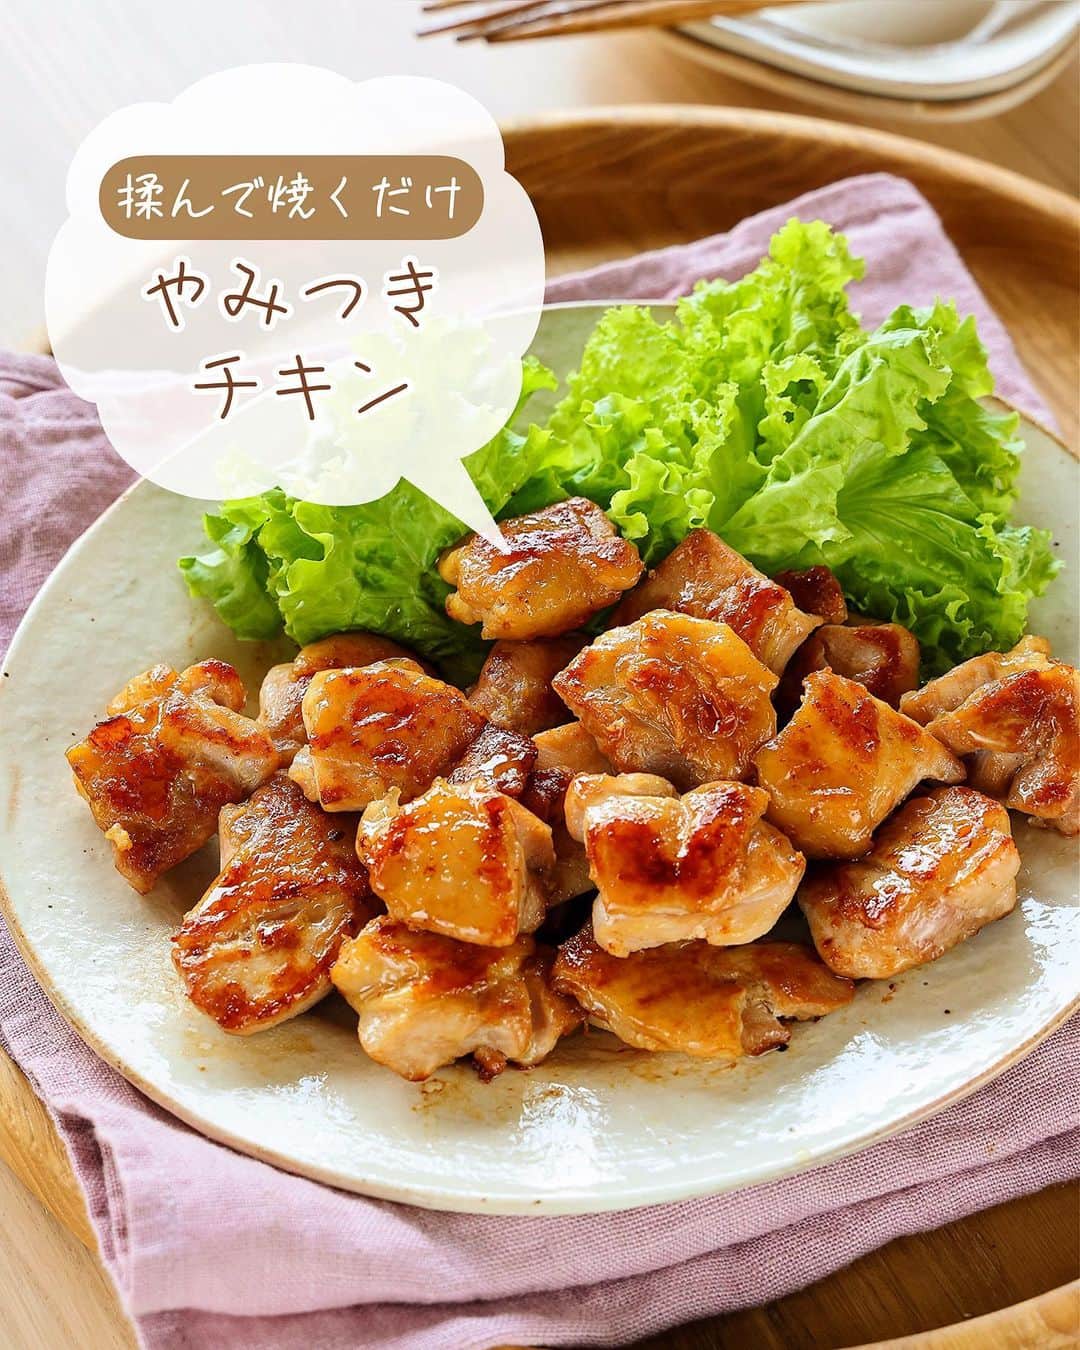 Mizuki【料理ブロガー・簡単レシピ】さんのインスタグラム写真 - (Mizuki【料理ブロガー・簡単レシピ】Instagram)「［#レシピ ］ ーーーーーーーーーーーーーーーー ''「ほんだしⓇ」マジック'' 揉んで焼くだけ！やみつきチキン ーーーーーーーーーーーーーーーー ⁡ ⁡ ⁡ こんにちは☺️ ⁡ 今日ご紹介させていただくのは \ 揉んで焼くだけ！やみつきチキン / ⁡ 味の素さんの「ほんだし®︎」を 揉んで焼くだけ！の超簡単レシピです💕 ⁡ 「ほんだし®︎」は顆粒で溶けやすいので みそ汁以外にも様々なメニューに使えます！ 和える・かける・炒める そして今回のように揉み込むなどすれば 様々なメニューが失敗なく簡単に作れますよ〜✨ だしとうま味のバランスが良いから ばっちり味が決まります❣️ ⁡ やみつきチキンは おかず、おつまみ、お弁当にも使えて 下味冷凍もできますので ぜひお試しくださいね😋 ⁡ ⁡ ⁡ ＿＿＿＿＿＿＿＿＿＿＿＿＿＿＿＿＿＿＿ 【2人分】 鶏もも肉...大1枚(300g) ⚫︎「ほんだし®︎」...小1 ⚫︎しょうゆ...小1 ⚫︎酒...小1 ⚫︎ごま油...小1 ⚫︎塩こしょう...少々 ⁡ 1.鶏肉は2cm大に切る。ポリ袋に鶏肉と⚫︎を入れ、50回揉む。 2.フライパンに鶏肉を並べてから中火にかけ、両面色よく焼いて火を通す。 ￣￣￣￣￣￣￣￣￣￣￣￣￣￣￣￣￣￣￣ ⁡ ⁡ 《ポイント》 ♦︎(気持ちに余裕があれば)鶏肉は皮目から焼くときれいに焼き色が付きます♩ ♦︎やみつきチキンは、フライパンに食材を入れてから火にかける''コールドスタート''が向いているお料理です♩ ♦︎火が通る前に焦げそうな場合は火加減を調節してください♩ ♦︎下味をつけた状態で冷凍しても◎ ♦︎片栗粉をまぶして揚げると唐揚げもできます♩ ⁡ ⁡ ⁡ ⁡ ⁡ ⁡ \ キャンペーンのお知らせ / 9月20日〜10月19日の期間 InstagramとTwitterで #私のほんだしマジック 投稿キャンペーン を実施中❣ 詳しくは味の素株式会社「ほんだしⓇ」 ブランドサイト・ギャラリーページの 「#私のほんだしマジックキャンペーン 」 をチェック！ ⁡ 私は#私のほんだしマジック 投稿キャンペーン の アンバサダーになりました☺️ みなさんも「ほんだし®︎」の意外な使い方や アレンジレシピを投稿して ぜひご参加くださいませ💕 ⁡ ⁡ ⁡ ⁡ ⁡ #PR #味の素 #私のほんだしマジック #アレンジレシピ #ほんだし #やみつきチキン #鶏肉レシピ #だし #出汁 #おいしい #簡単 #節約料理 #簡単料理  #時短料理 #料理 #mizukiレシピ  #時短レシピ #節約レシピ #簡単レシピ」9月20日 13時37分 - mizuki_31cafe